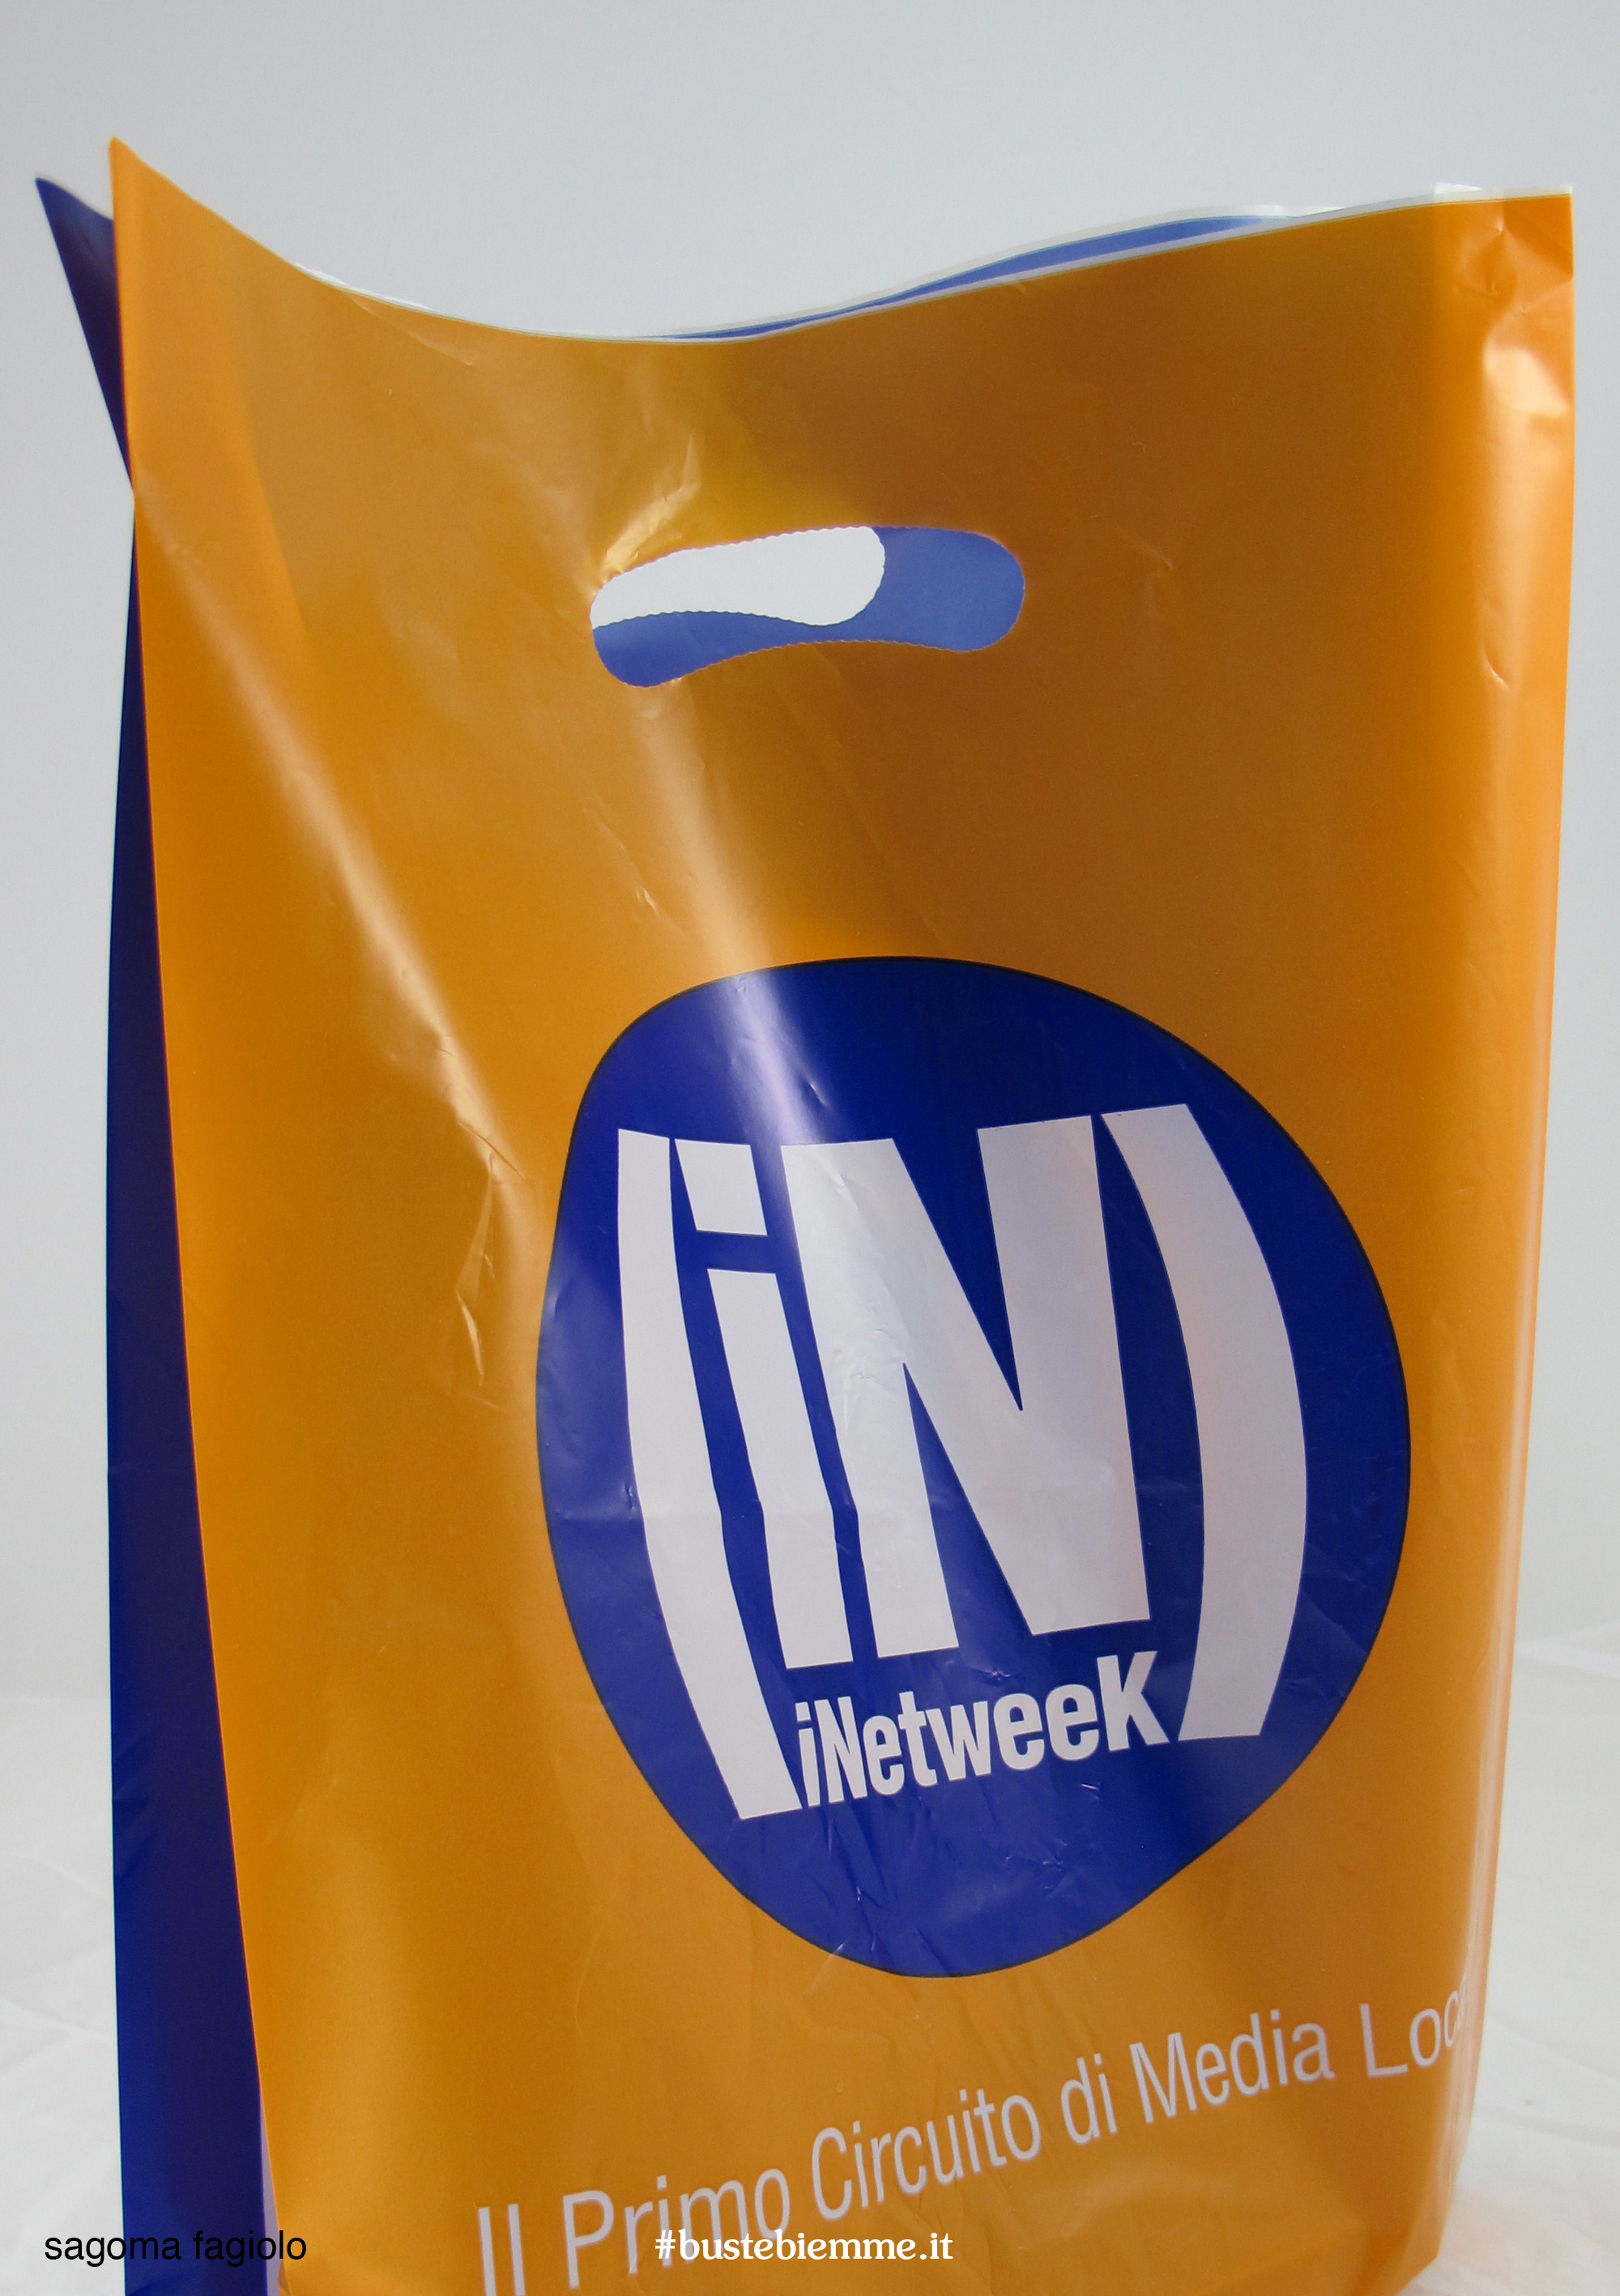 sacchetto in plastica personalizzato con maniglia fustellata